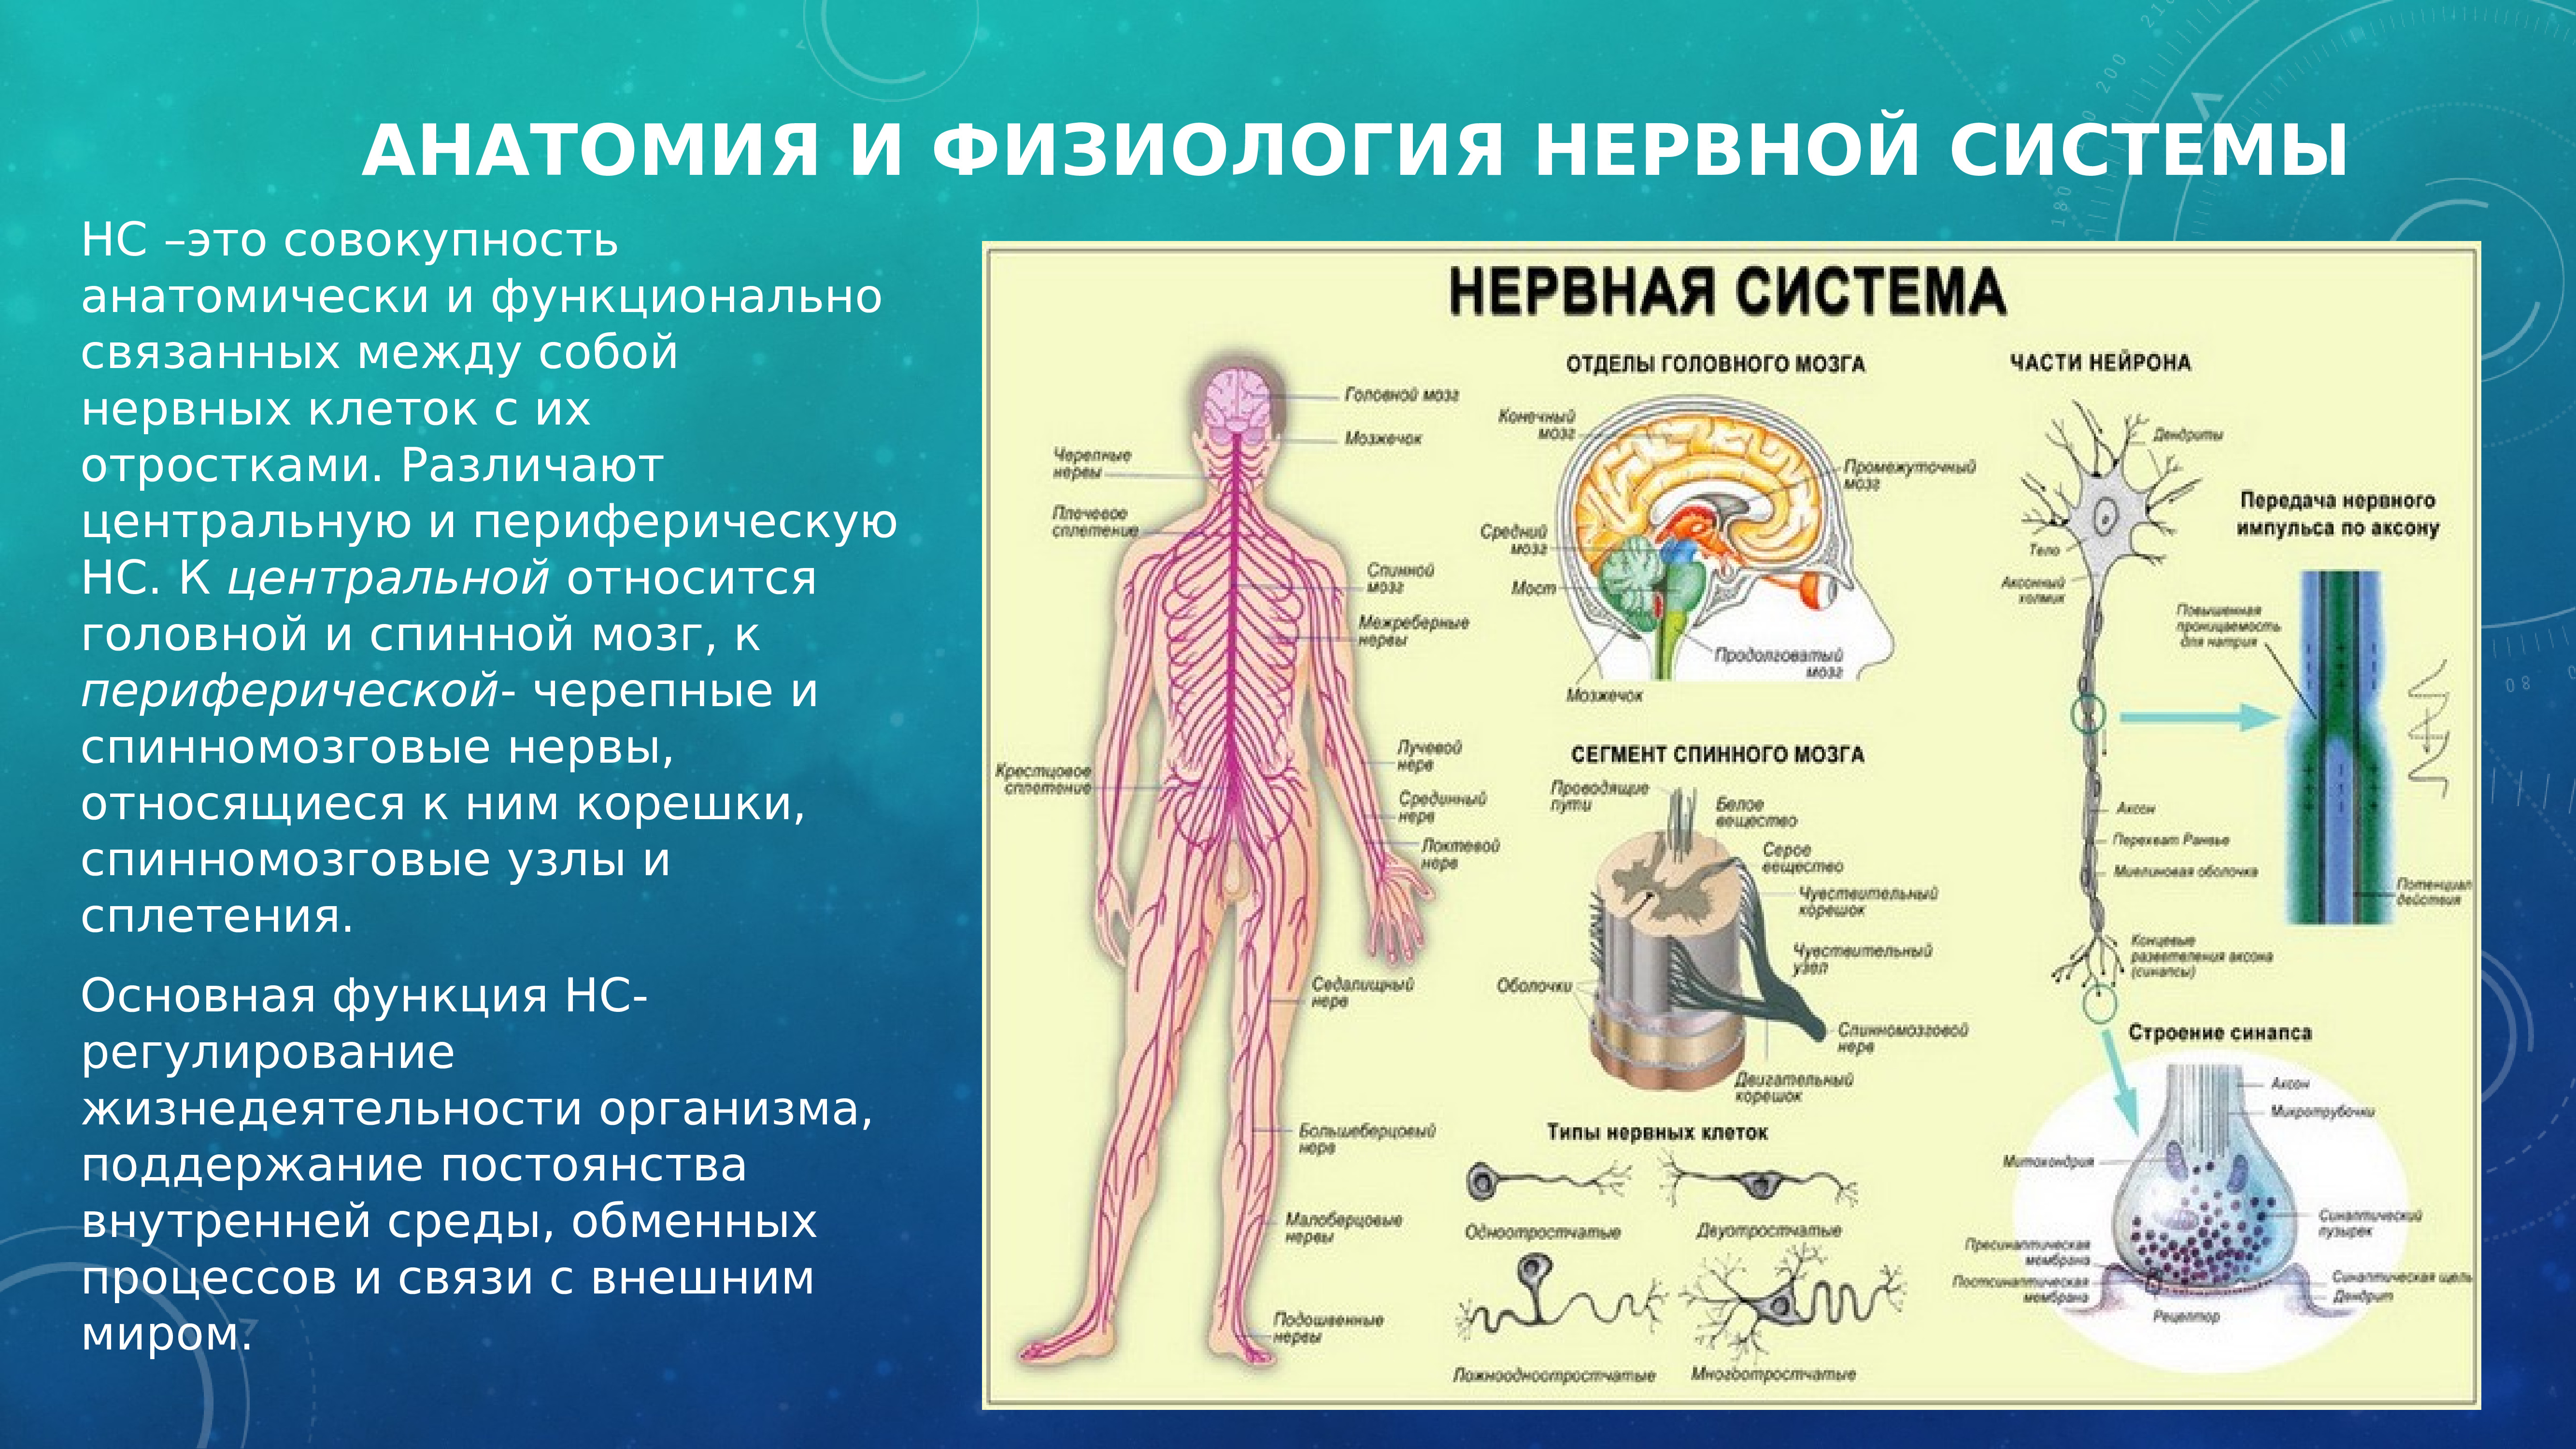 Какие функции выполняет периферическая нервная система. Анатомия и физиология нервной системы. Разделение нервной системы на центральную и периферическую. Нервная система человека делится на центральную и периферическую. ЦНС И ПНС анатомия и физиология человека.